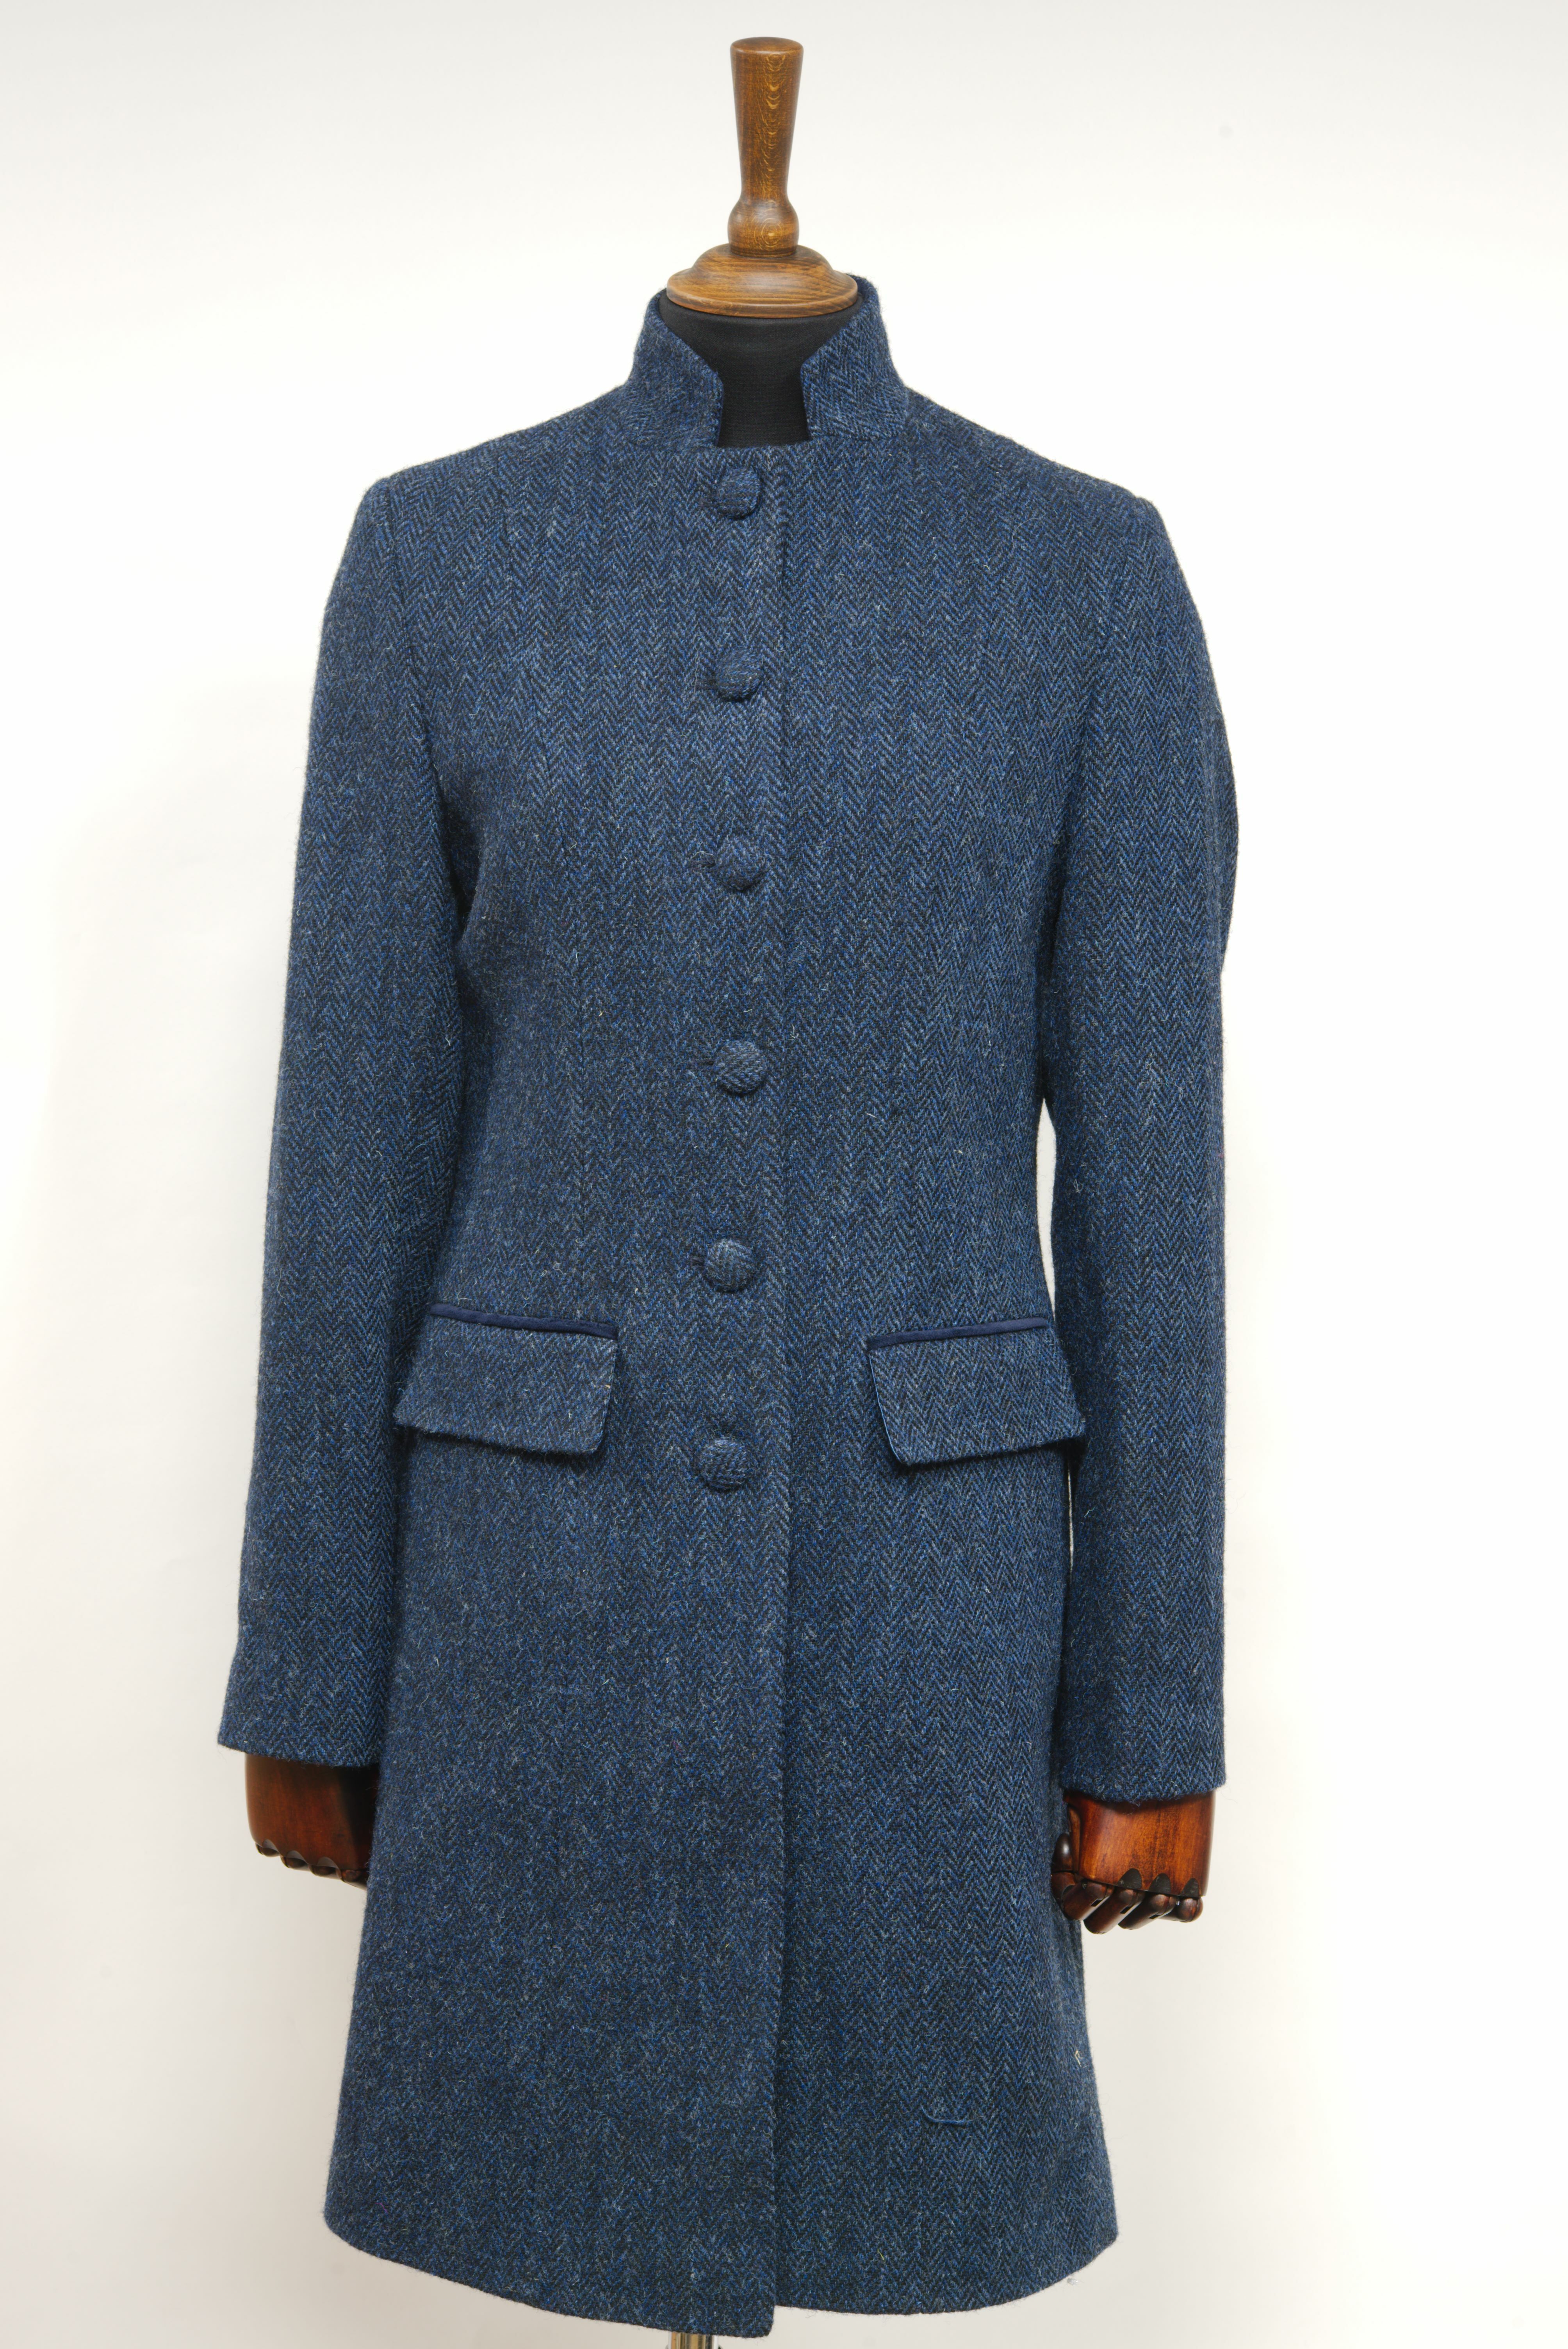 Harris Tweed Lucy Coat (Mandarin Collar) – Harris Tweed Lucy Coat